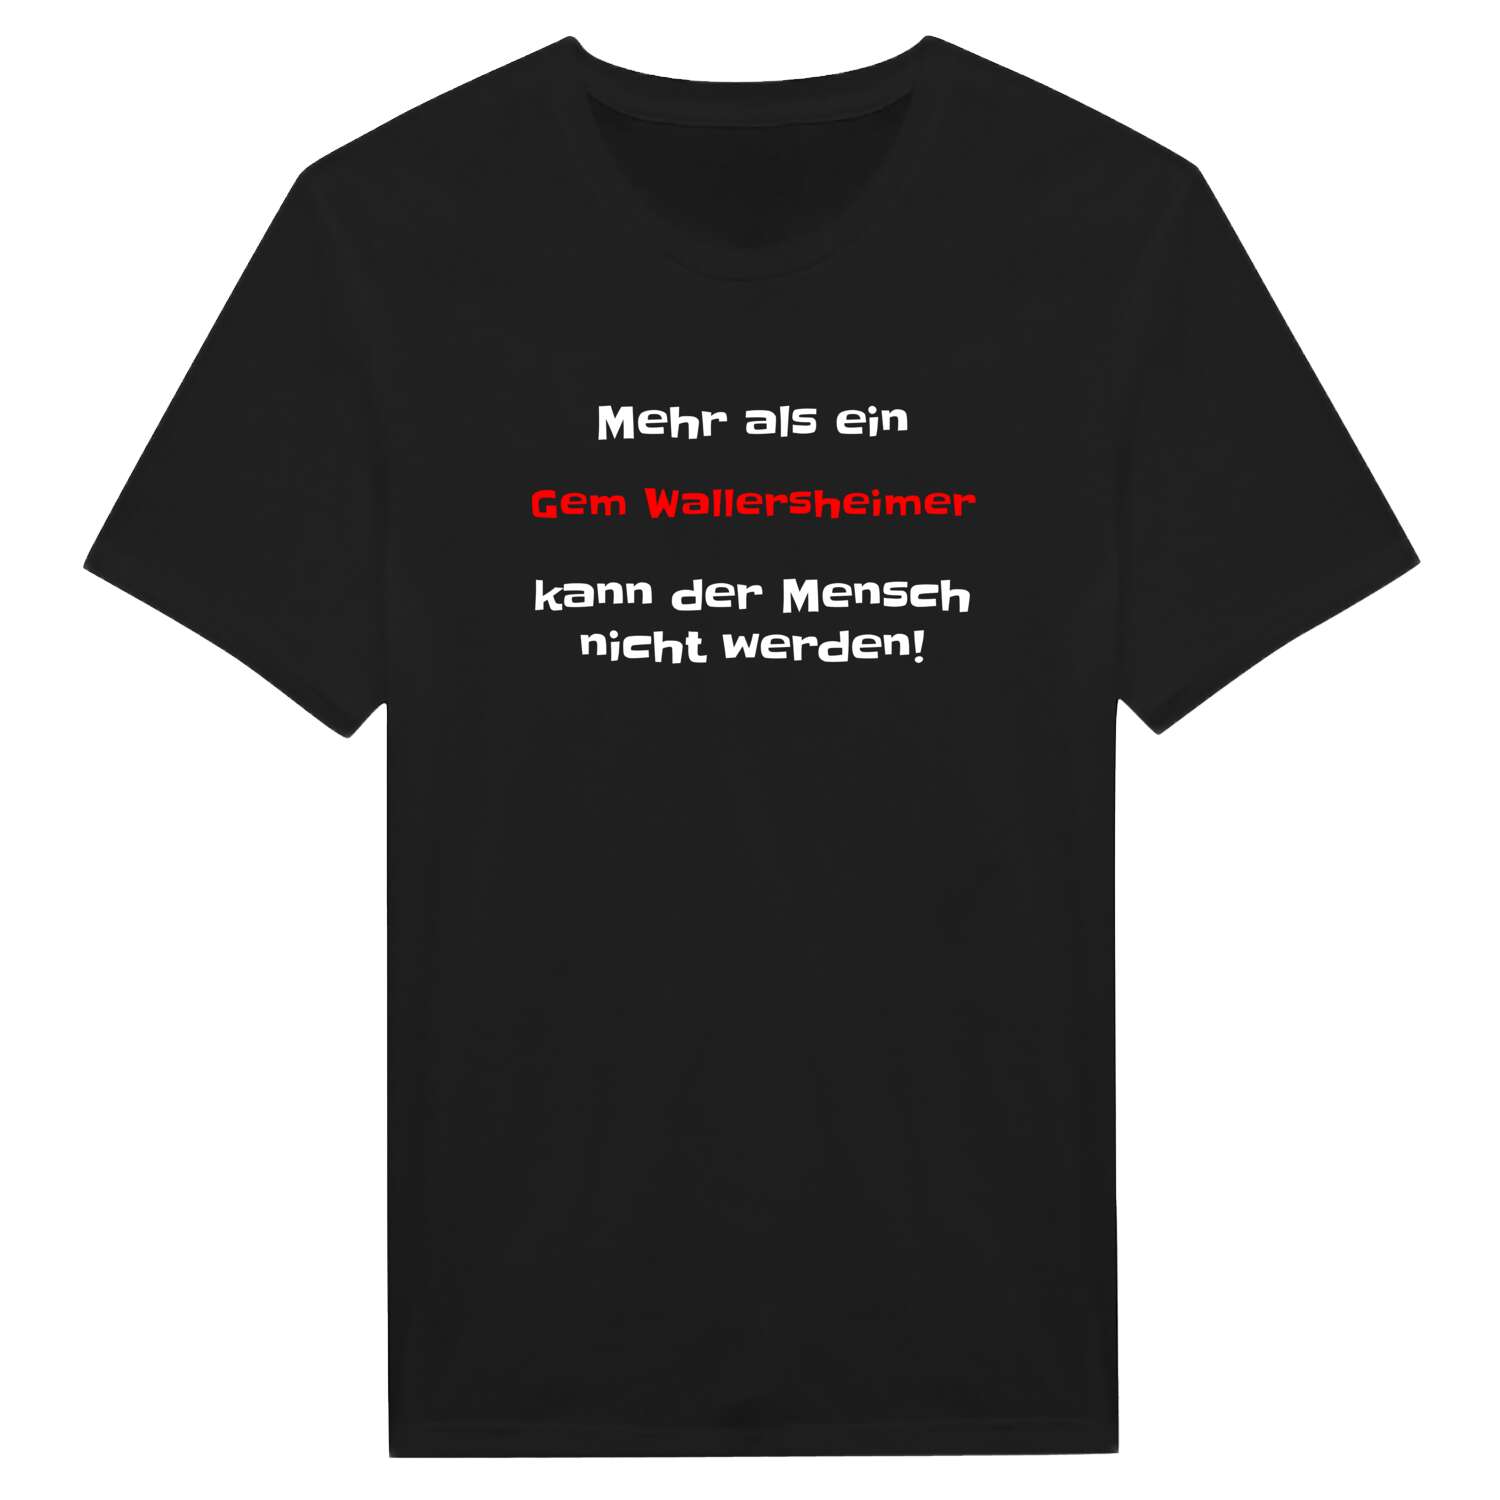 Gem Wallersheim T-Shirt »Mehr als ein«